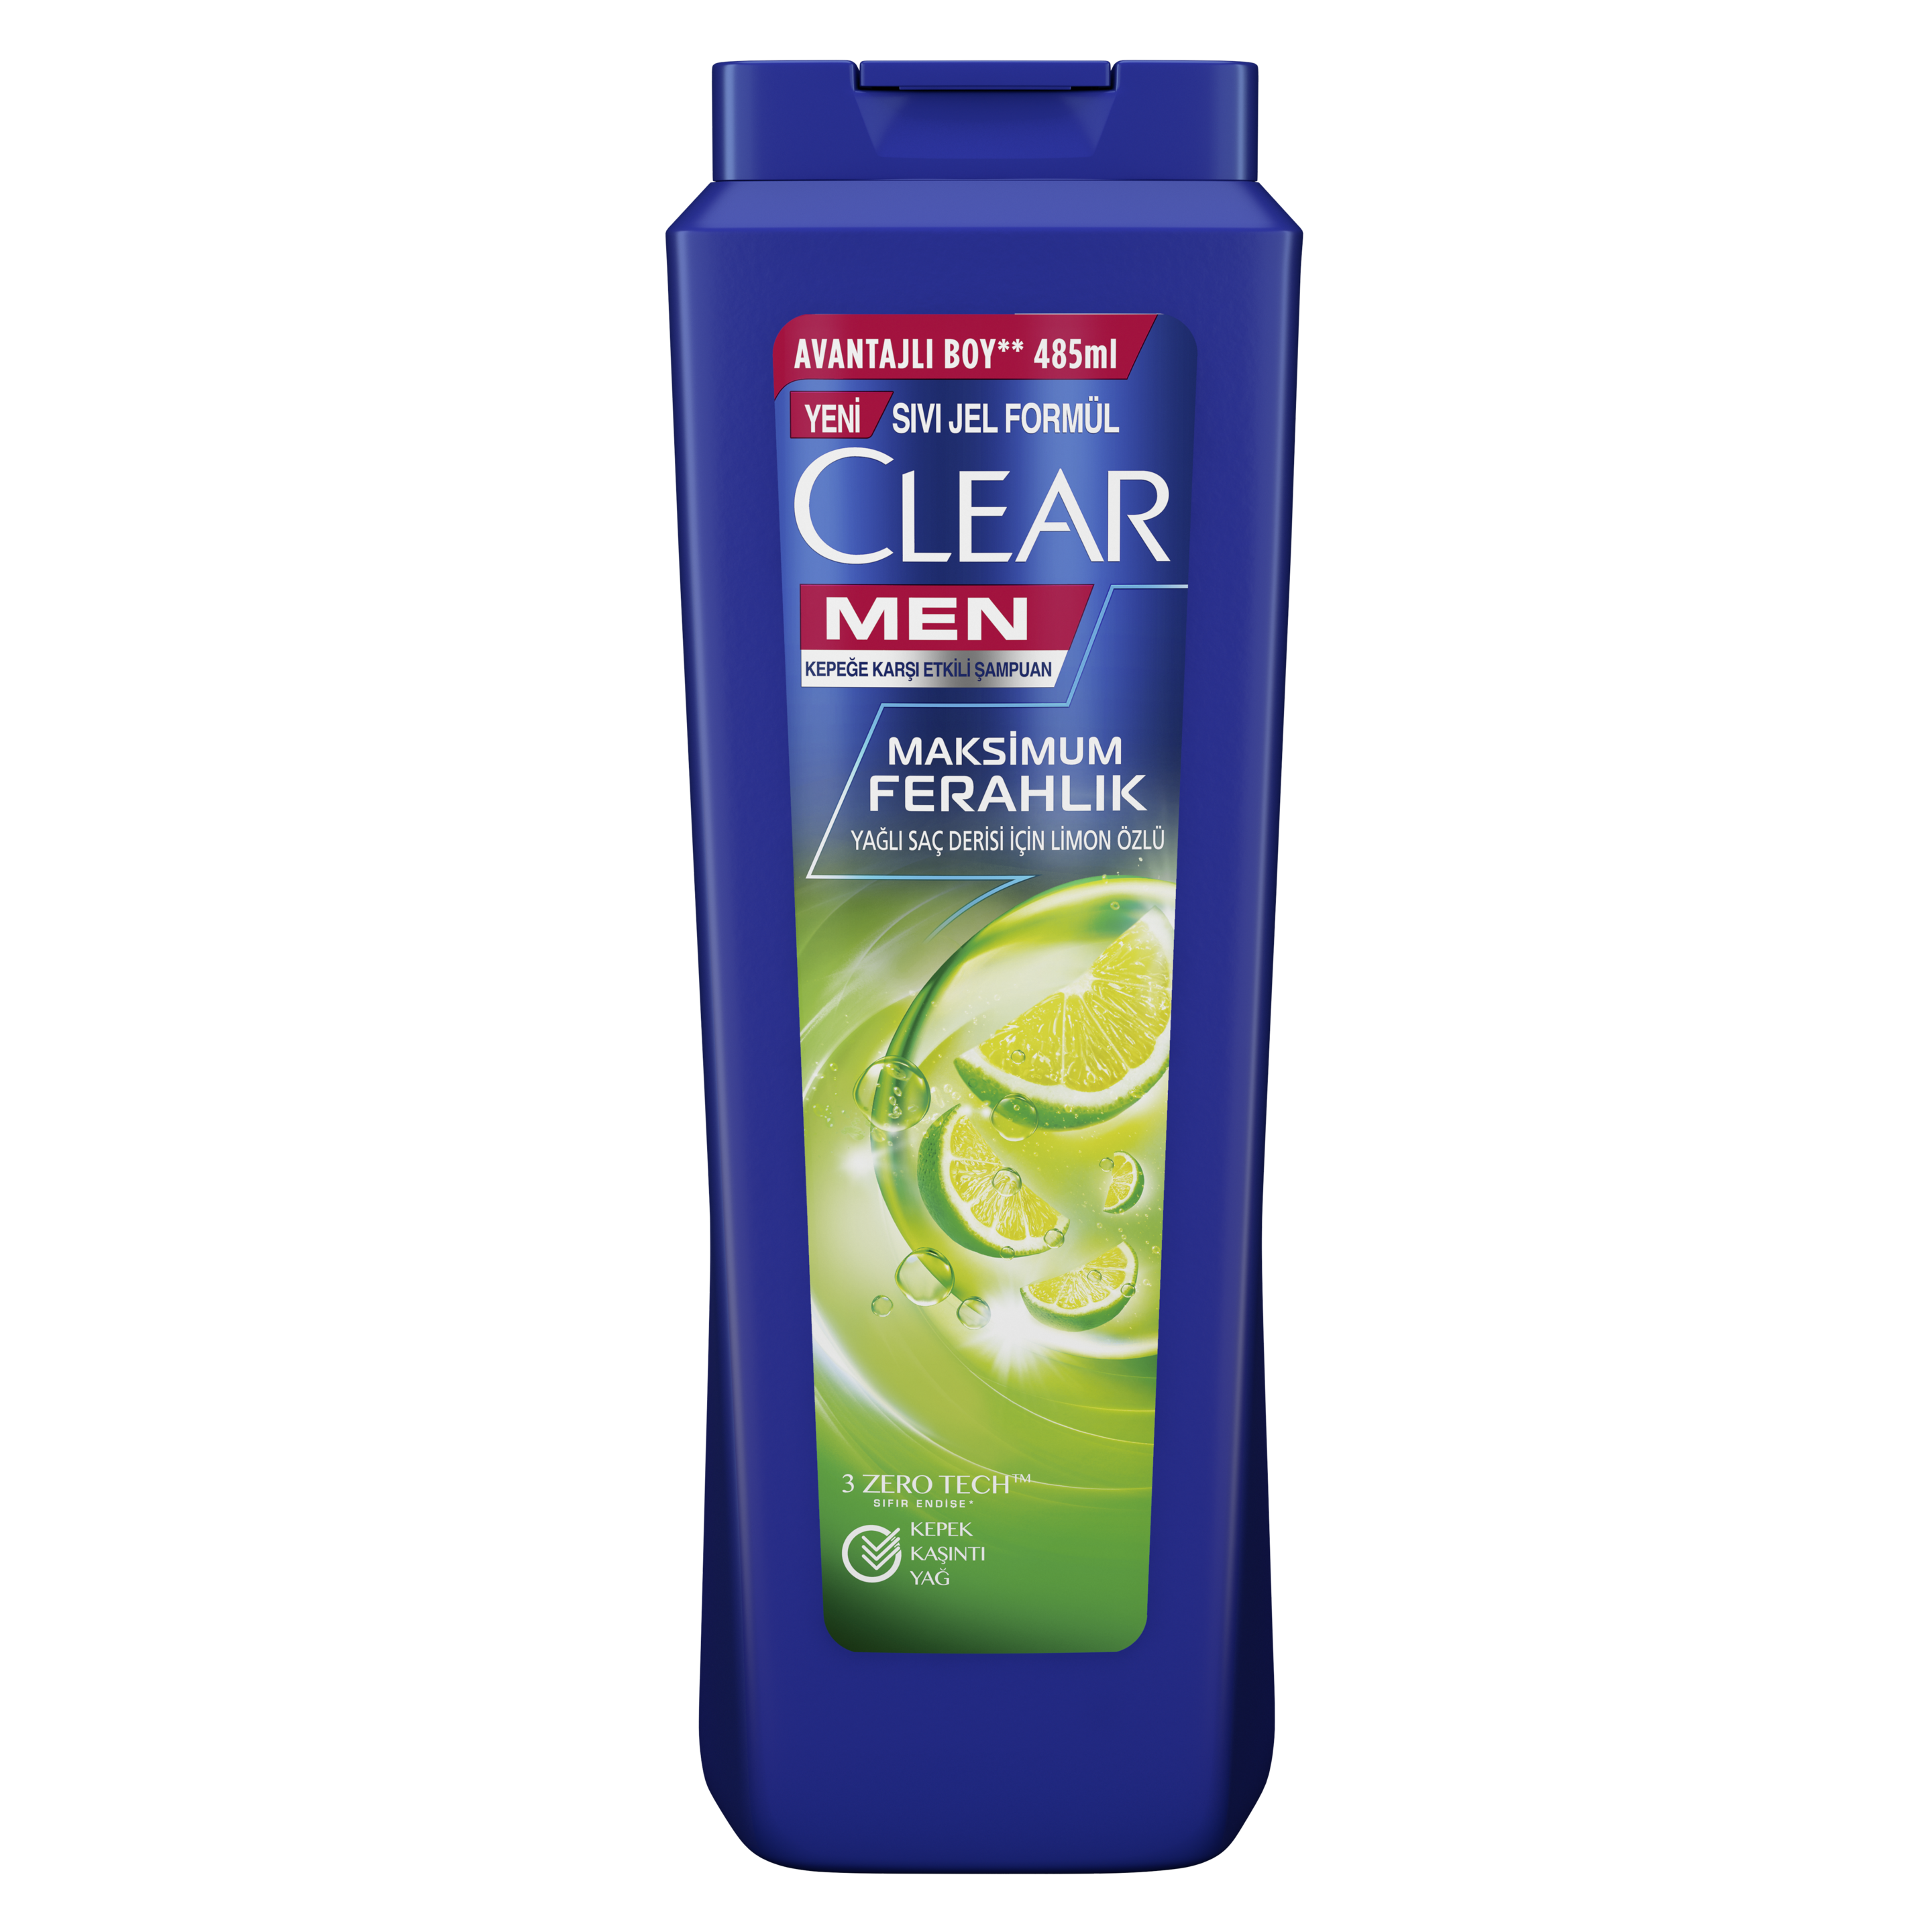 Clear Men Maksimum Ferahlık Şampuan